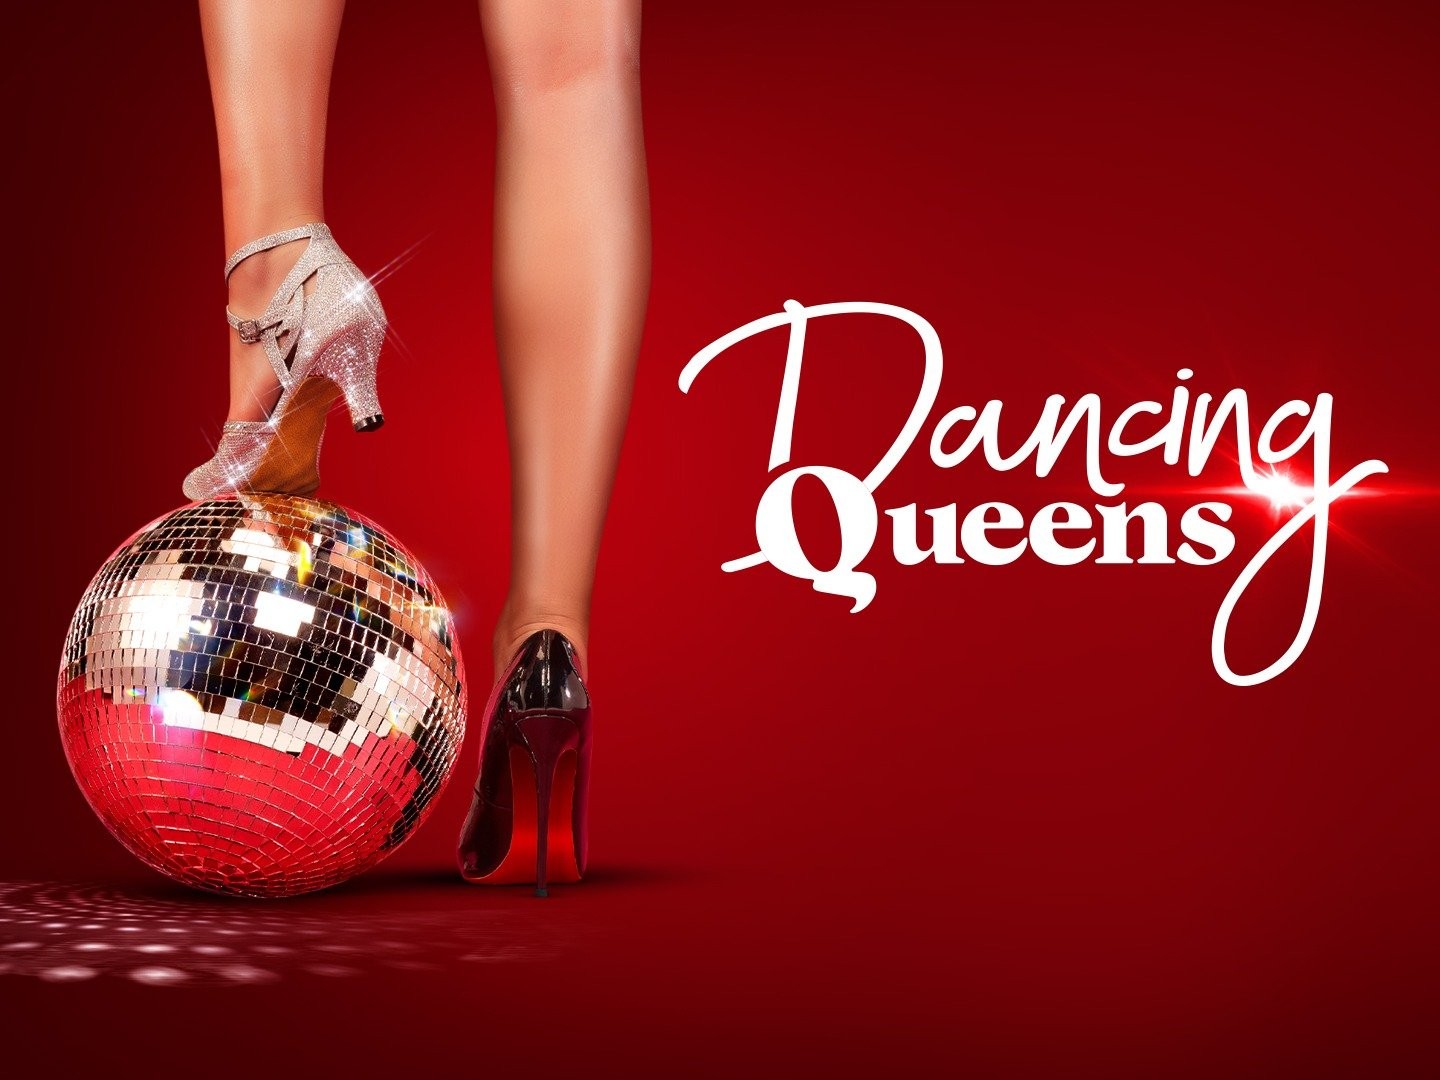 Review: 'Dancing Queen' Works Best When It Focuses On Its Queen